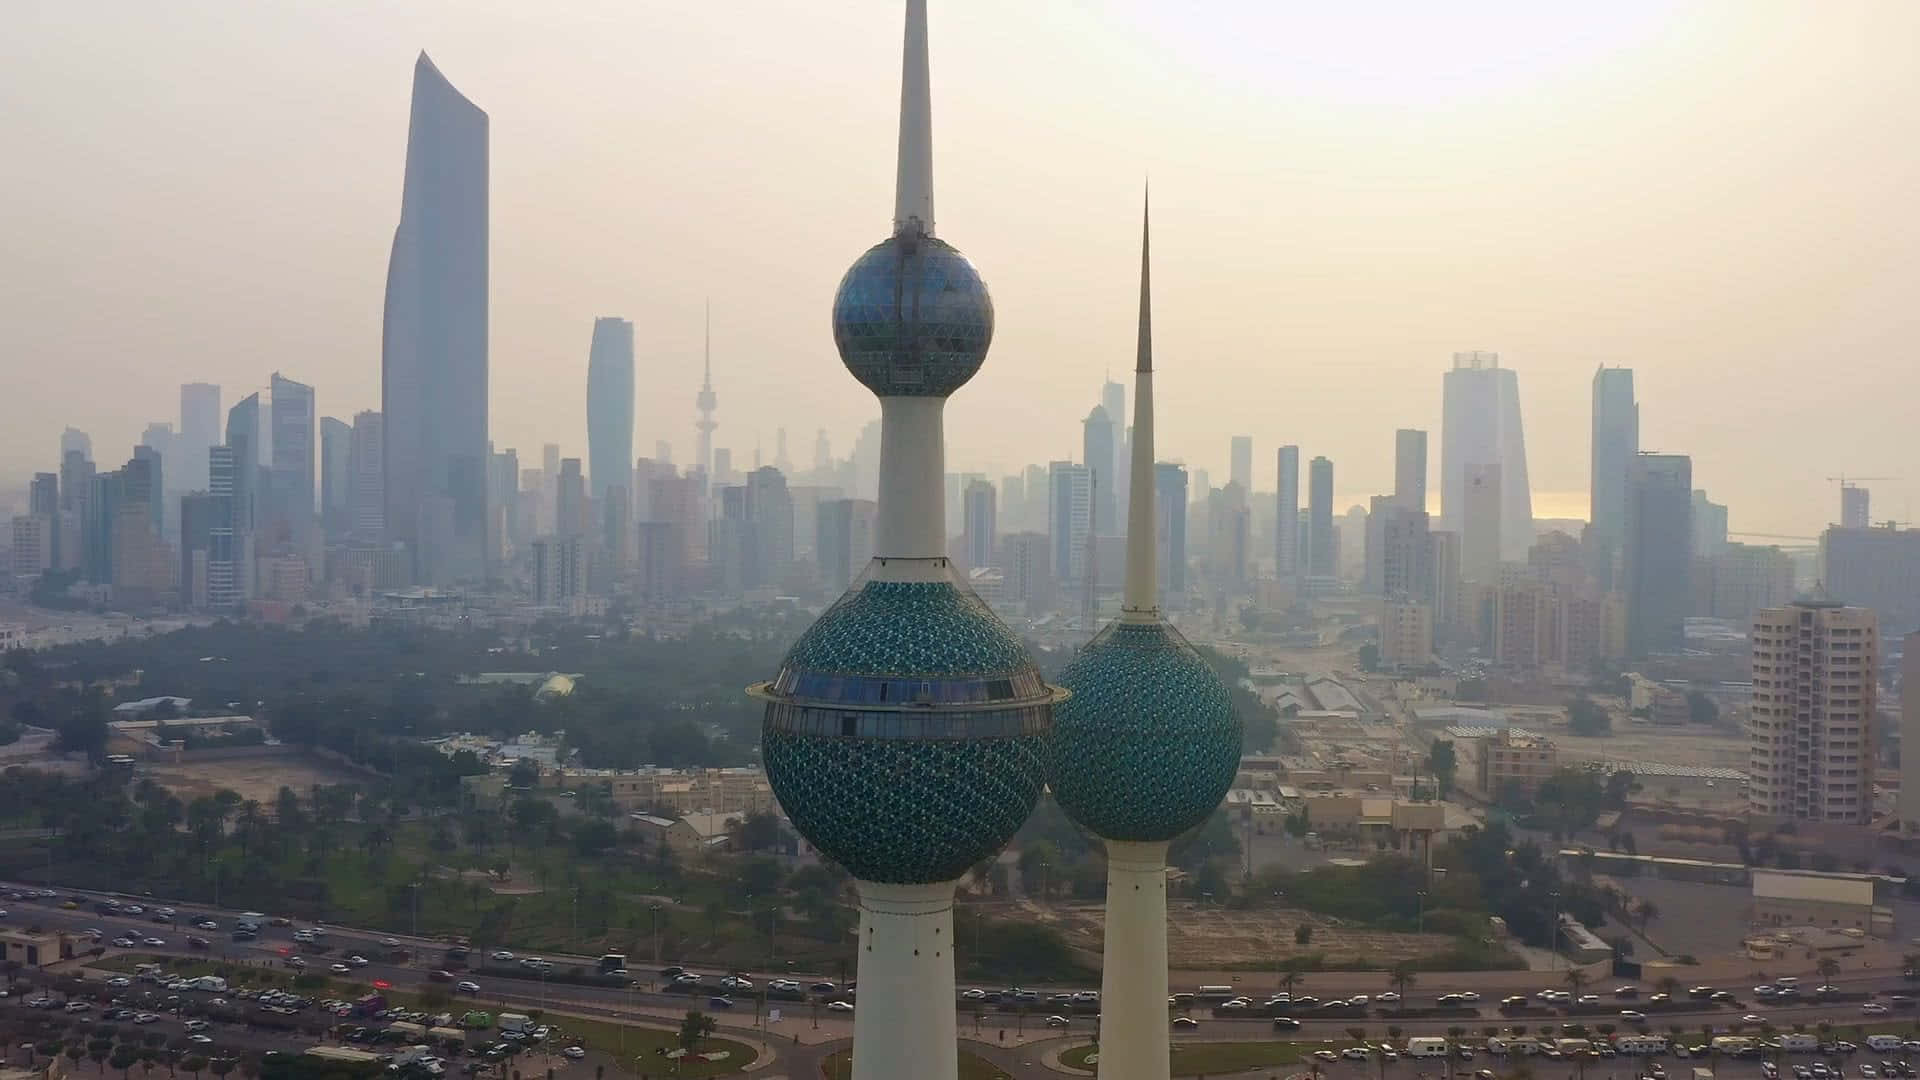 Papel De Parede Para Computador Ou Celular Com A Imagem Das Torres De Kuwait E A Cidade. Papel de Parede